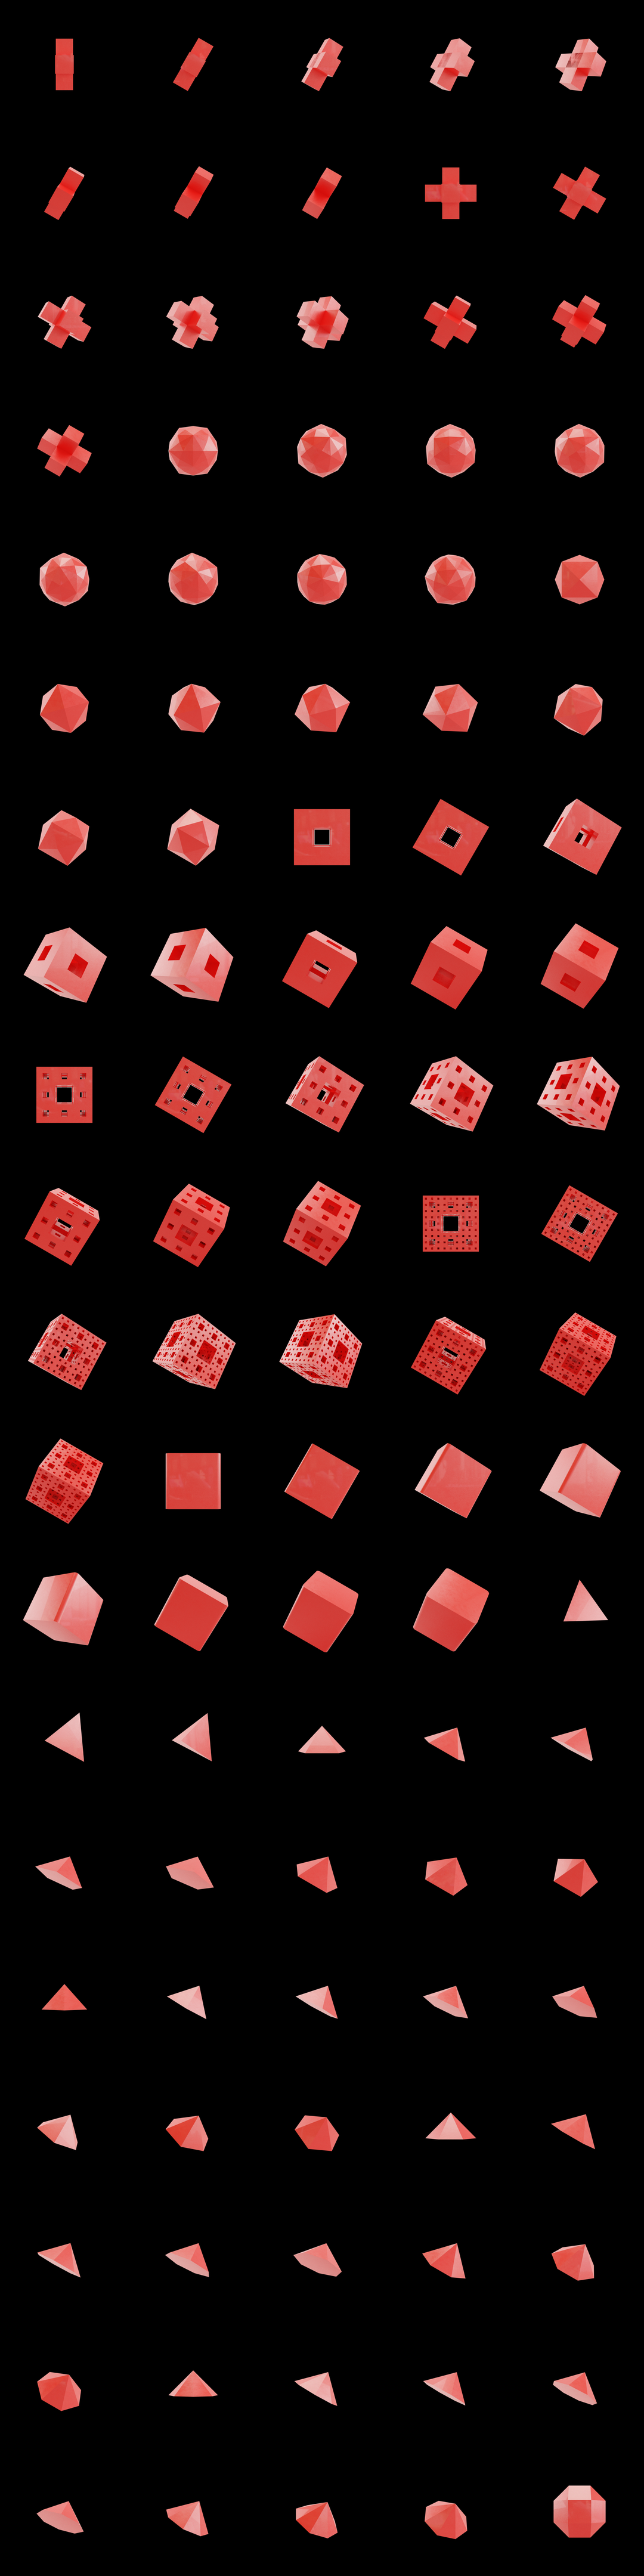 The Bundle - cmp.plastic/b tile image 2